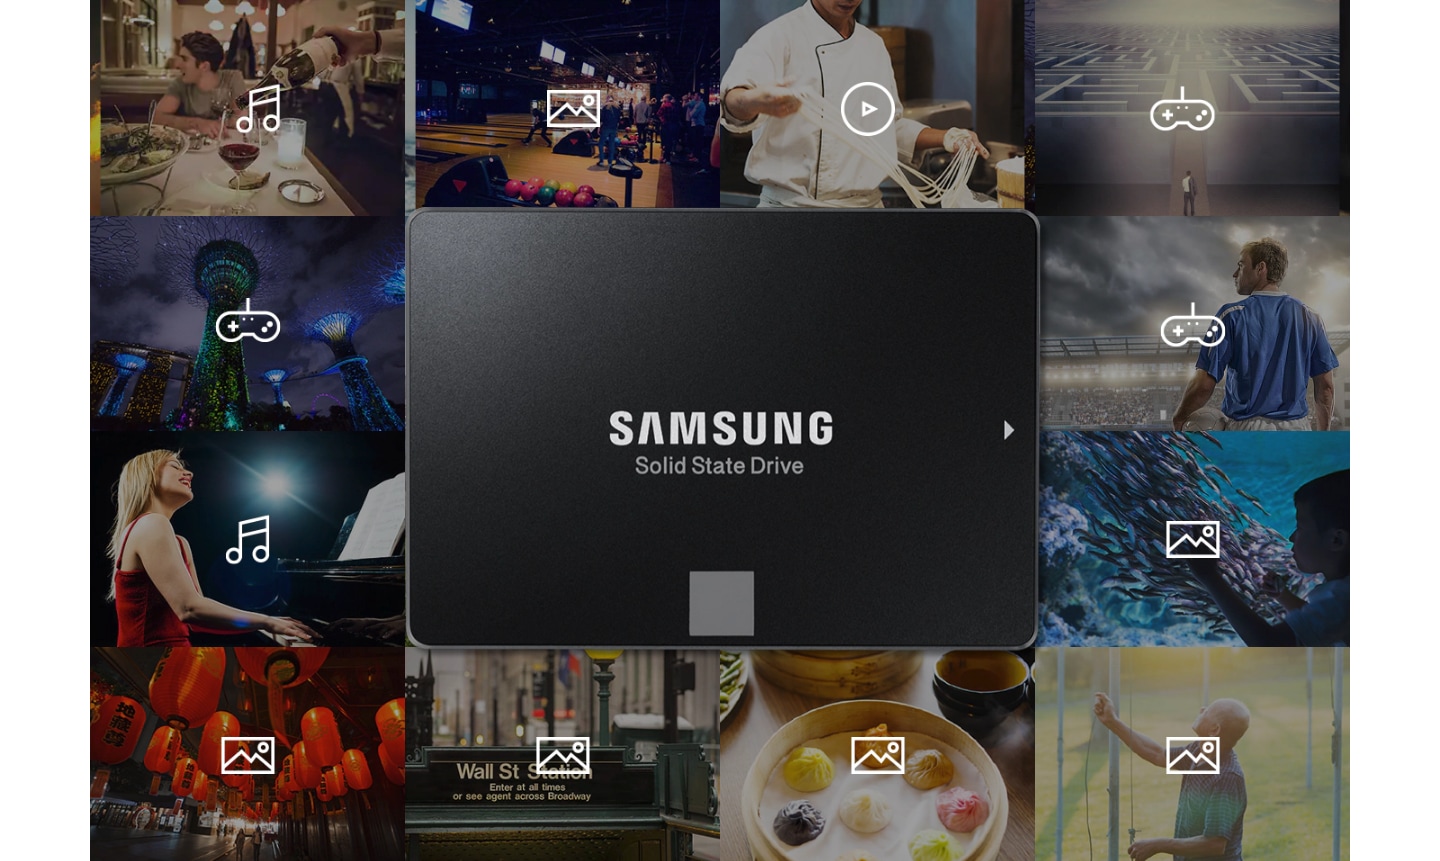 يرتبط Samsung SSD بمعلومات مثل الموسيقى والصور ومقاطع الفيديو والألعاب الناشئة عن مجموعة متنوعة من الأنشطة اليومية (الأداء والرياضة والطبخ والأكل والأنشطة الخارجية وما إلى ذلك)